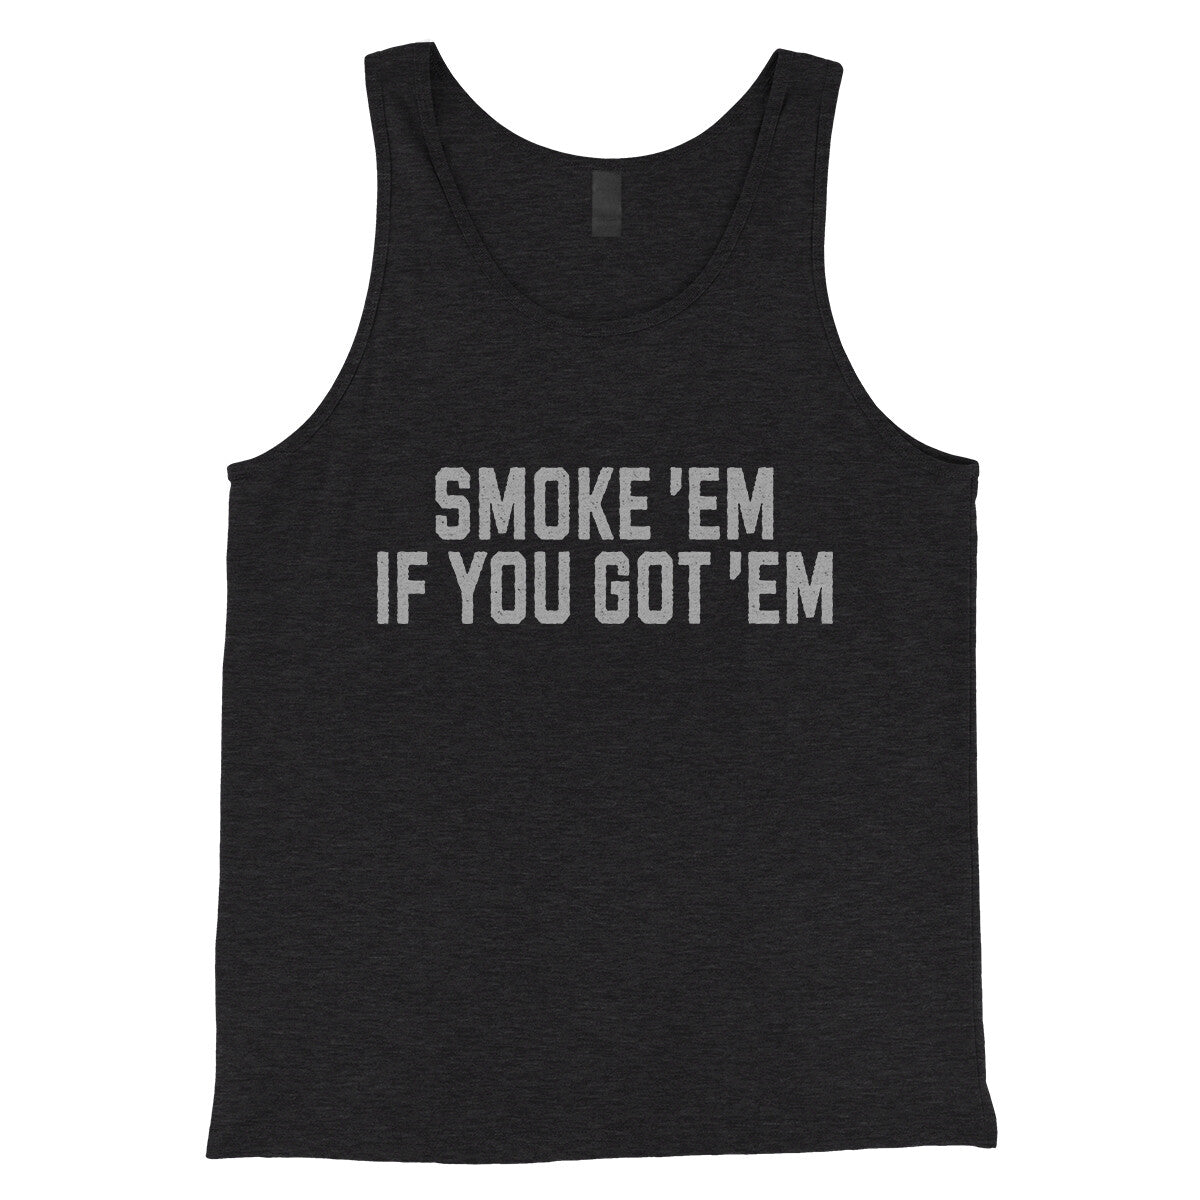 Smoke ‘em If you Got ‘em in Charcoal Black TriBlend Color